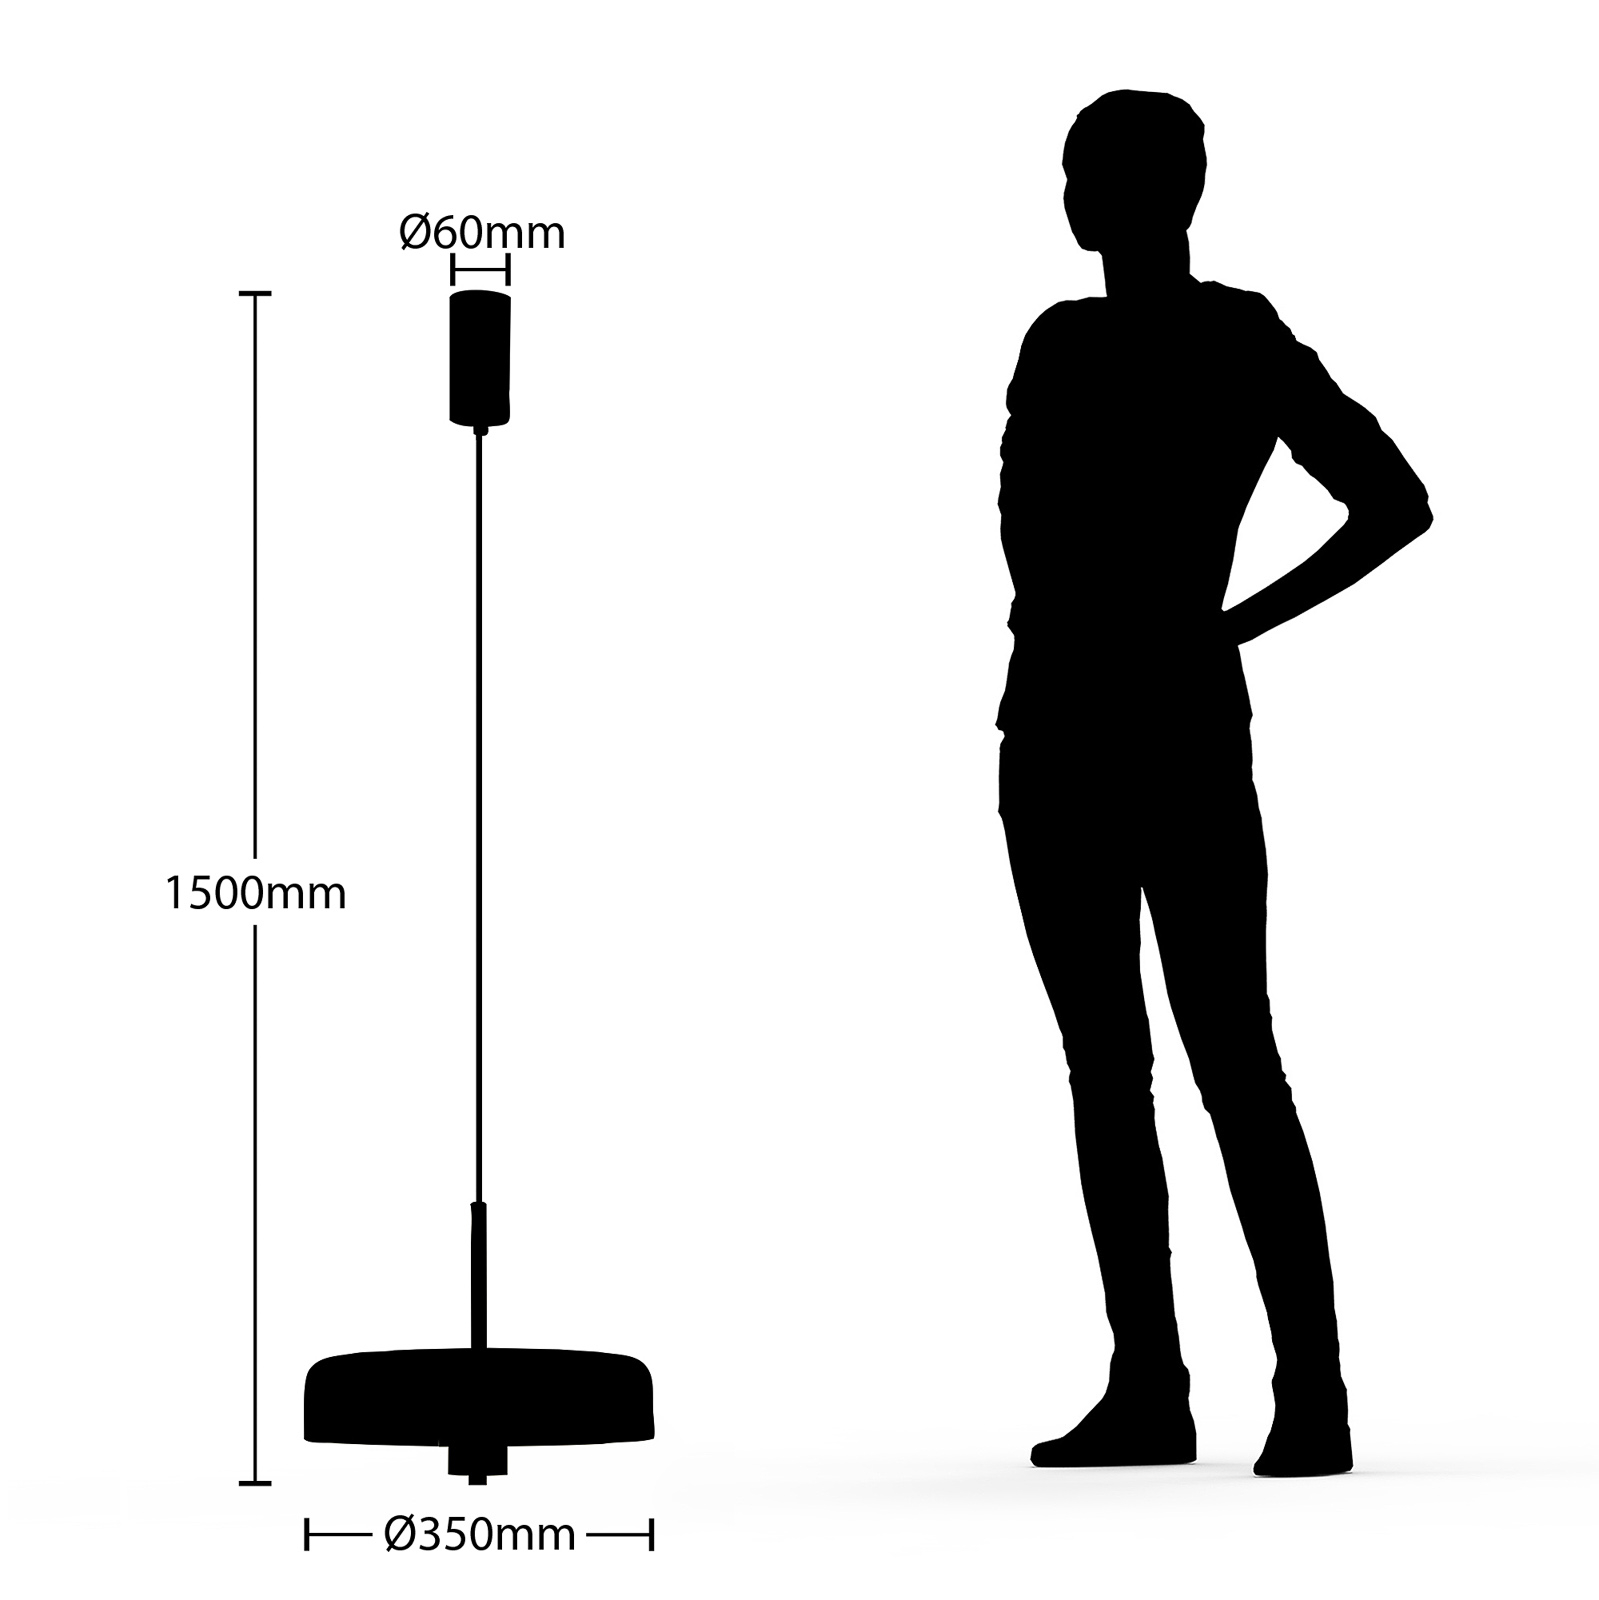 Lucande Filoreta lampada sospensione, 35 cm, nero